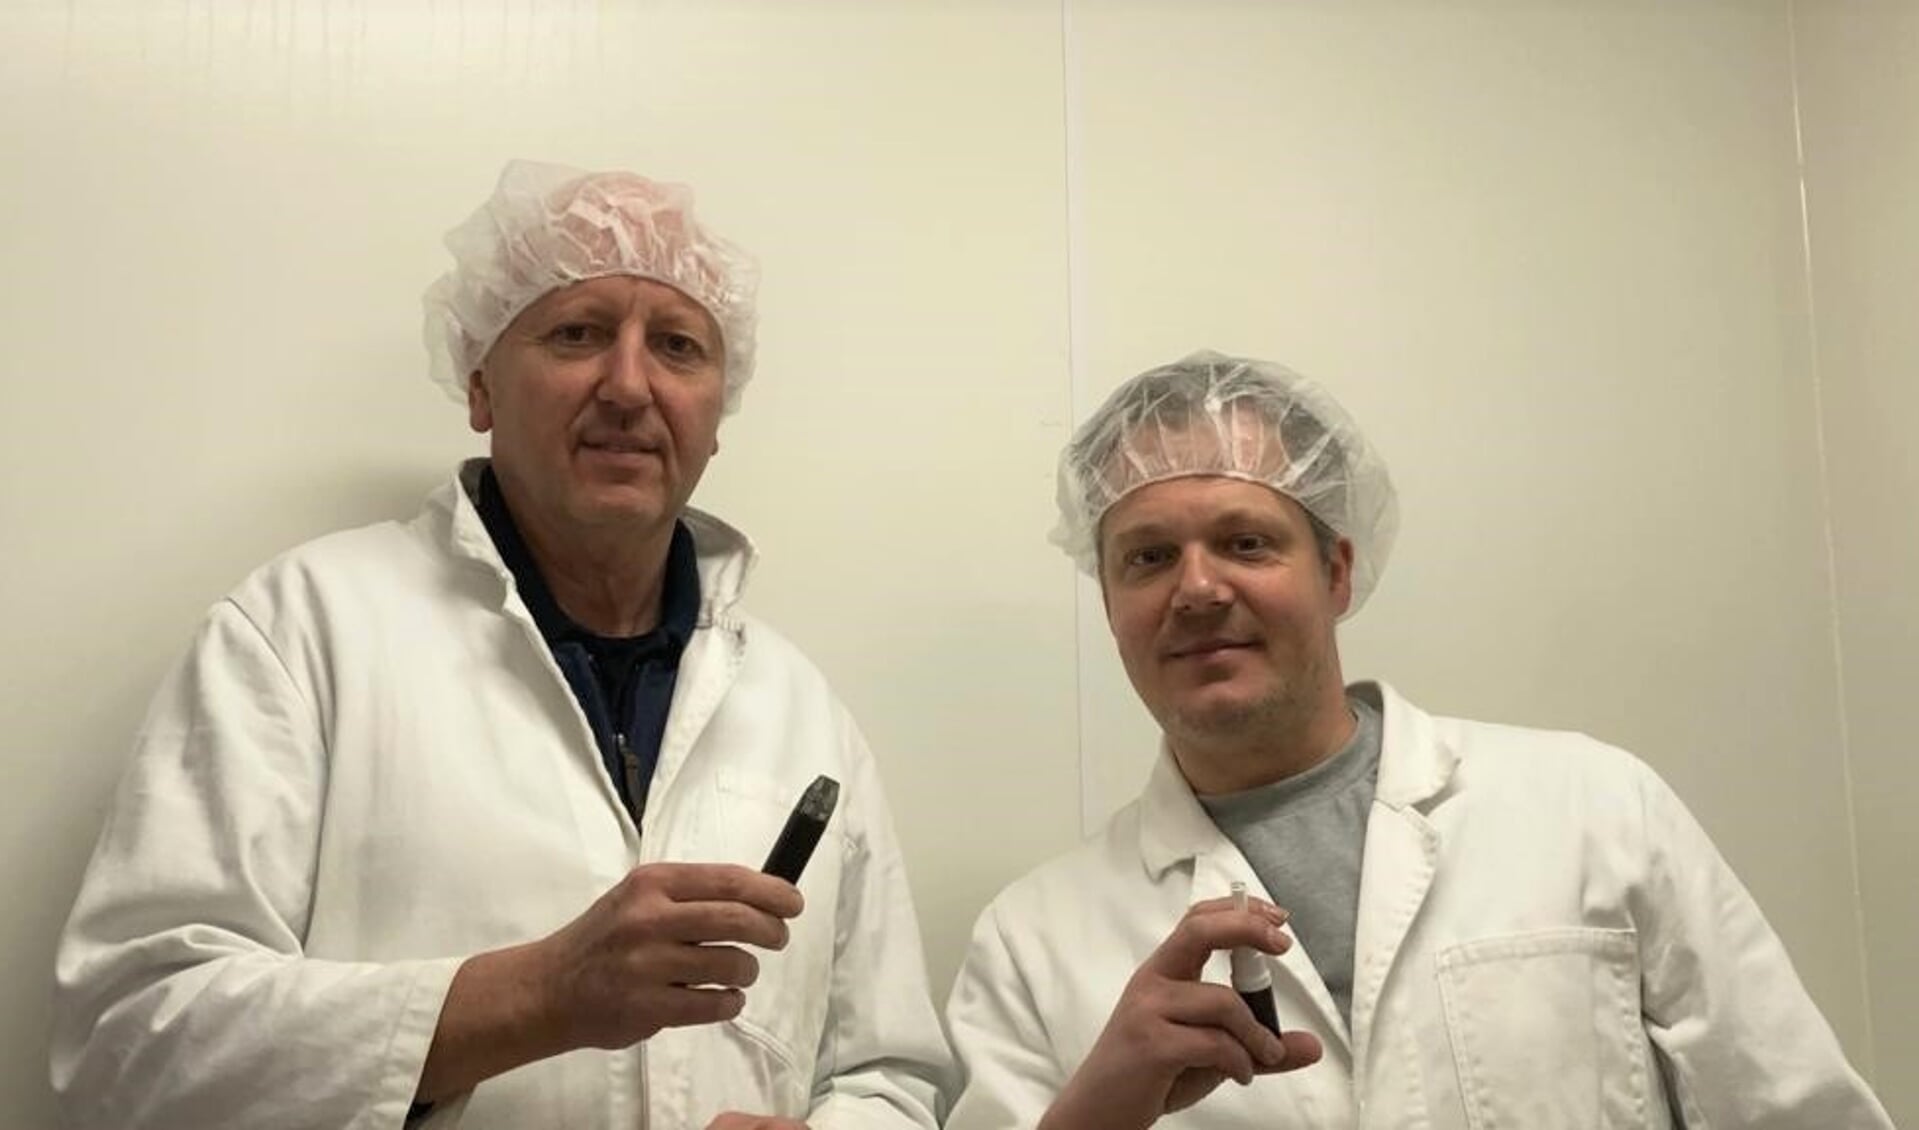 De oprichters van Vossensteyn Biomedical: Enrico Steijn uit Voorschoten (links) en Martijn de Vos 